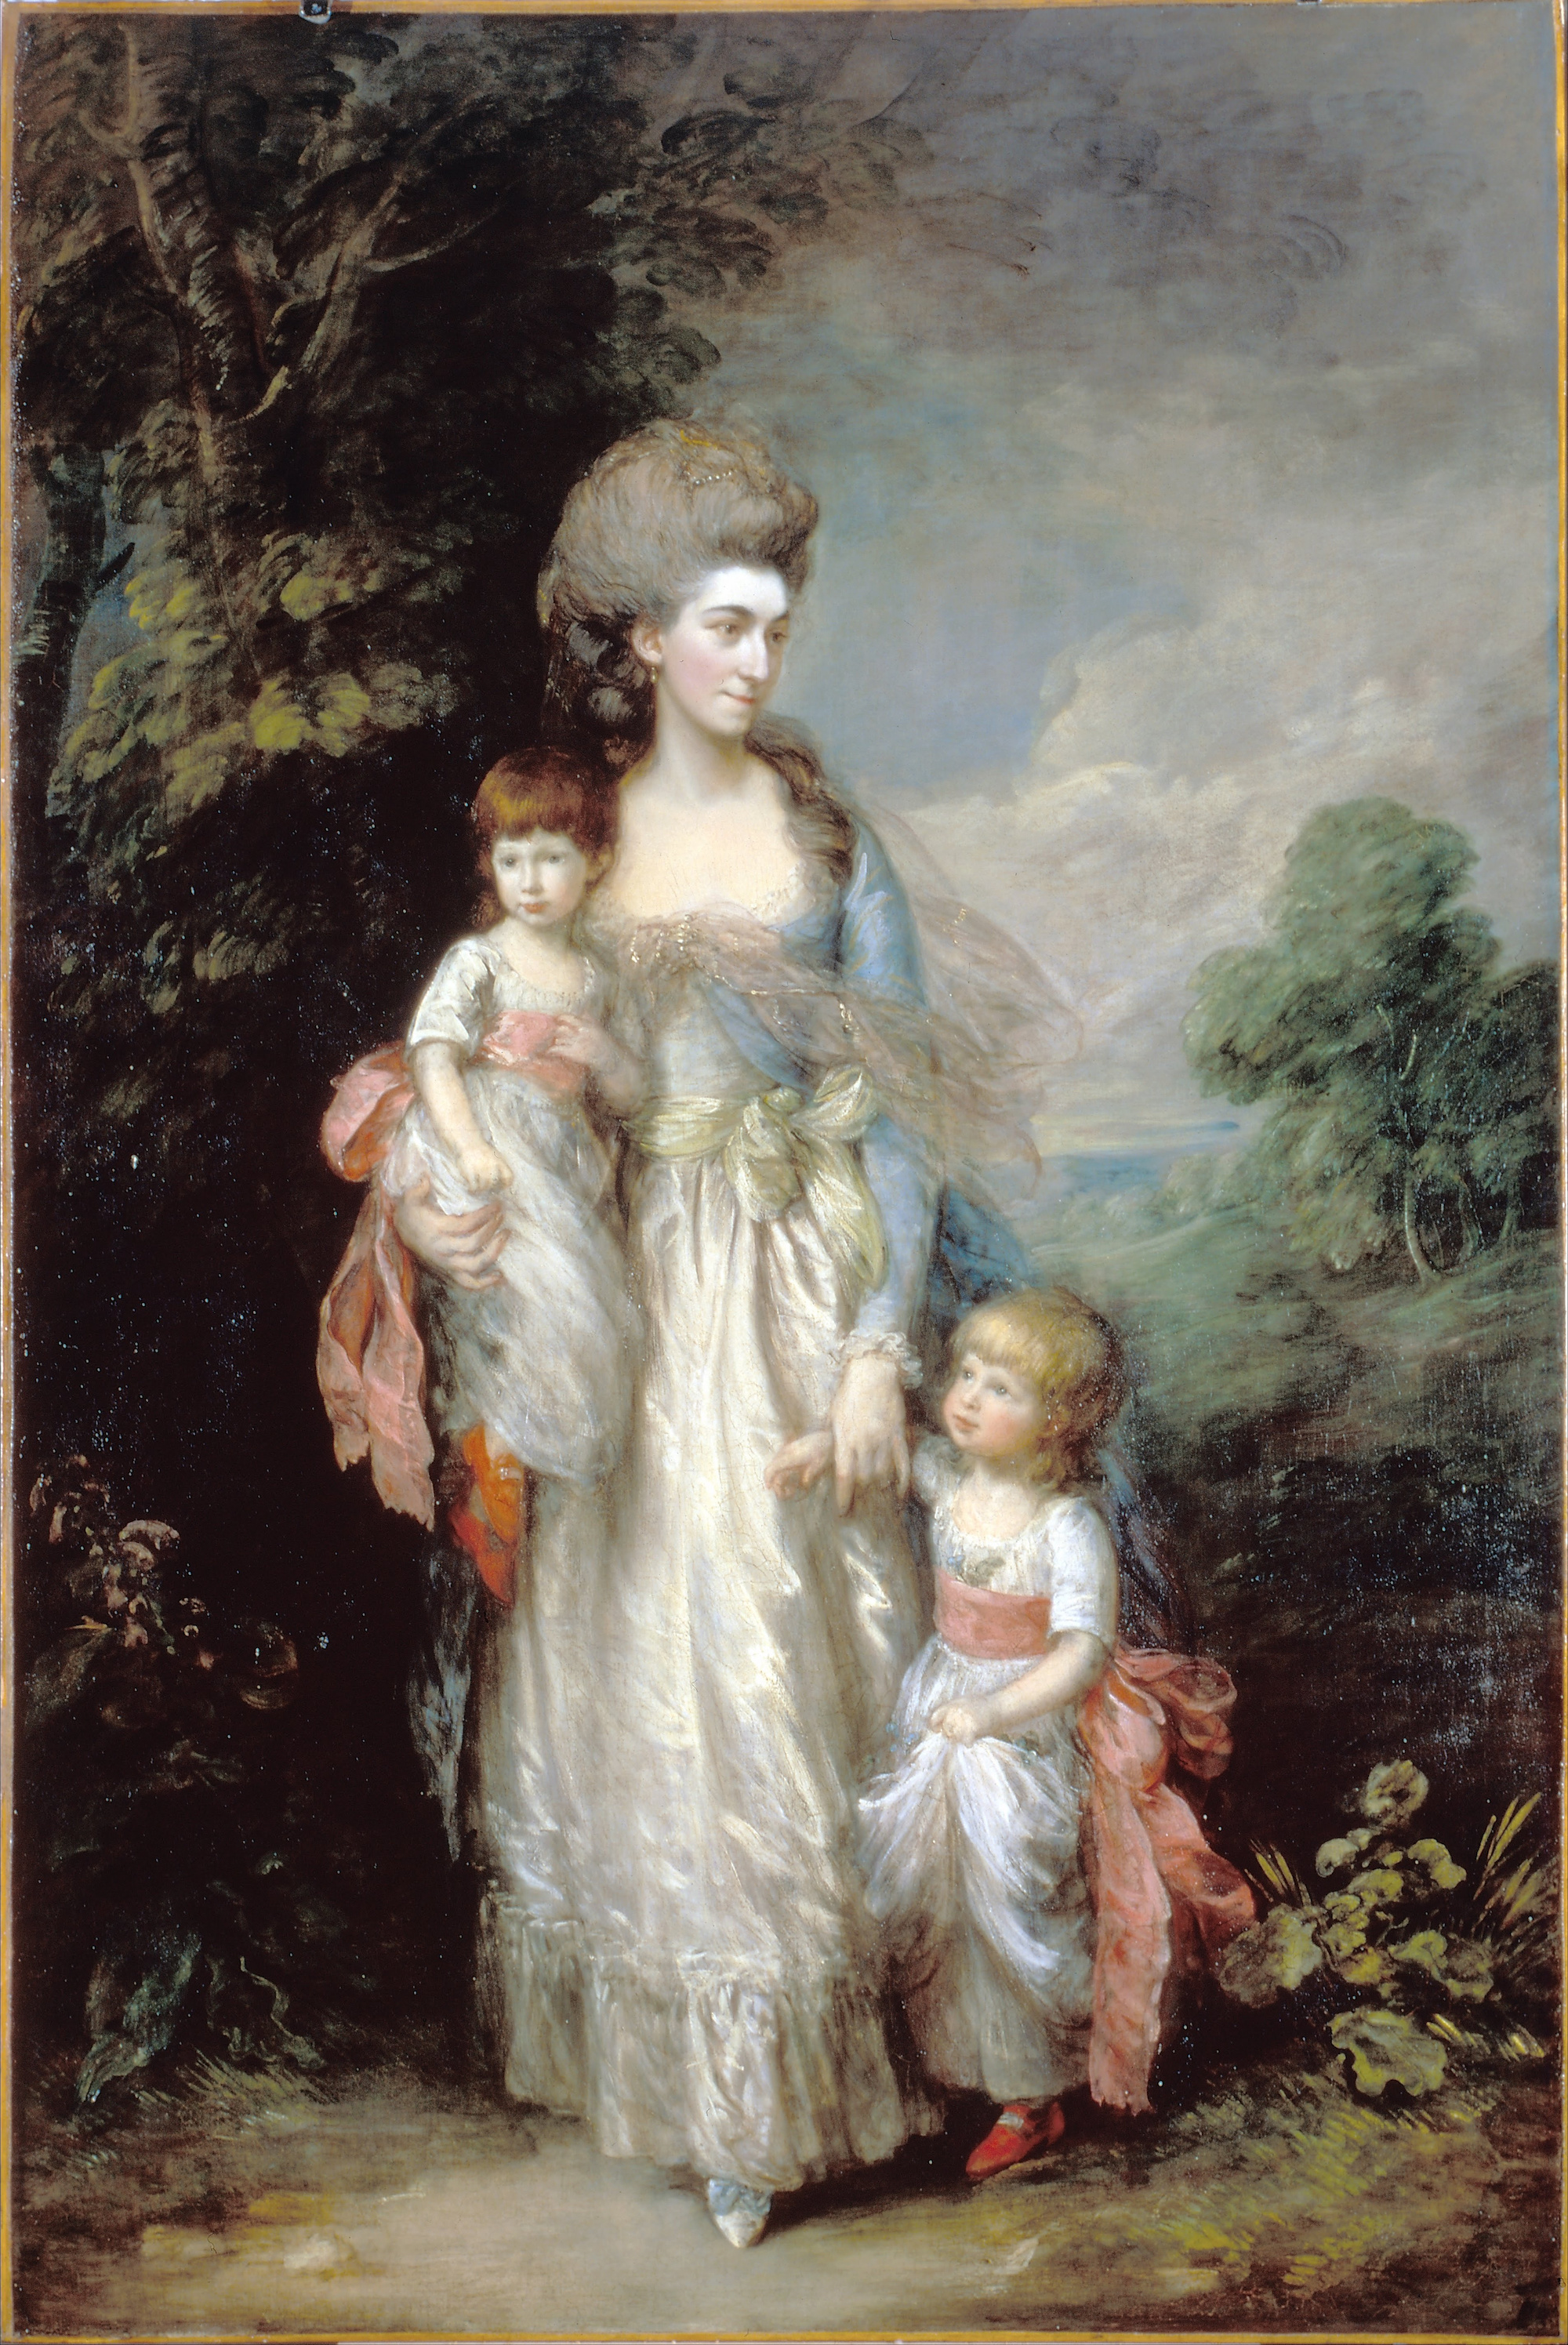 Doamna Elizabeth Moody cu fii ei Samuel și Thomas by Thomas Gainsborough - c.1779-85 - 154.2 x 234 cm 